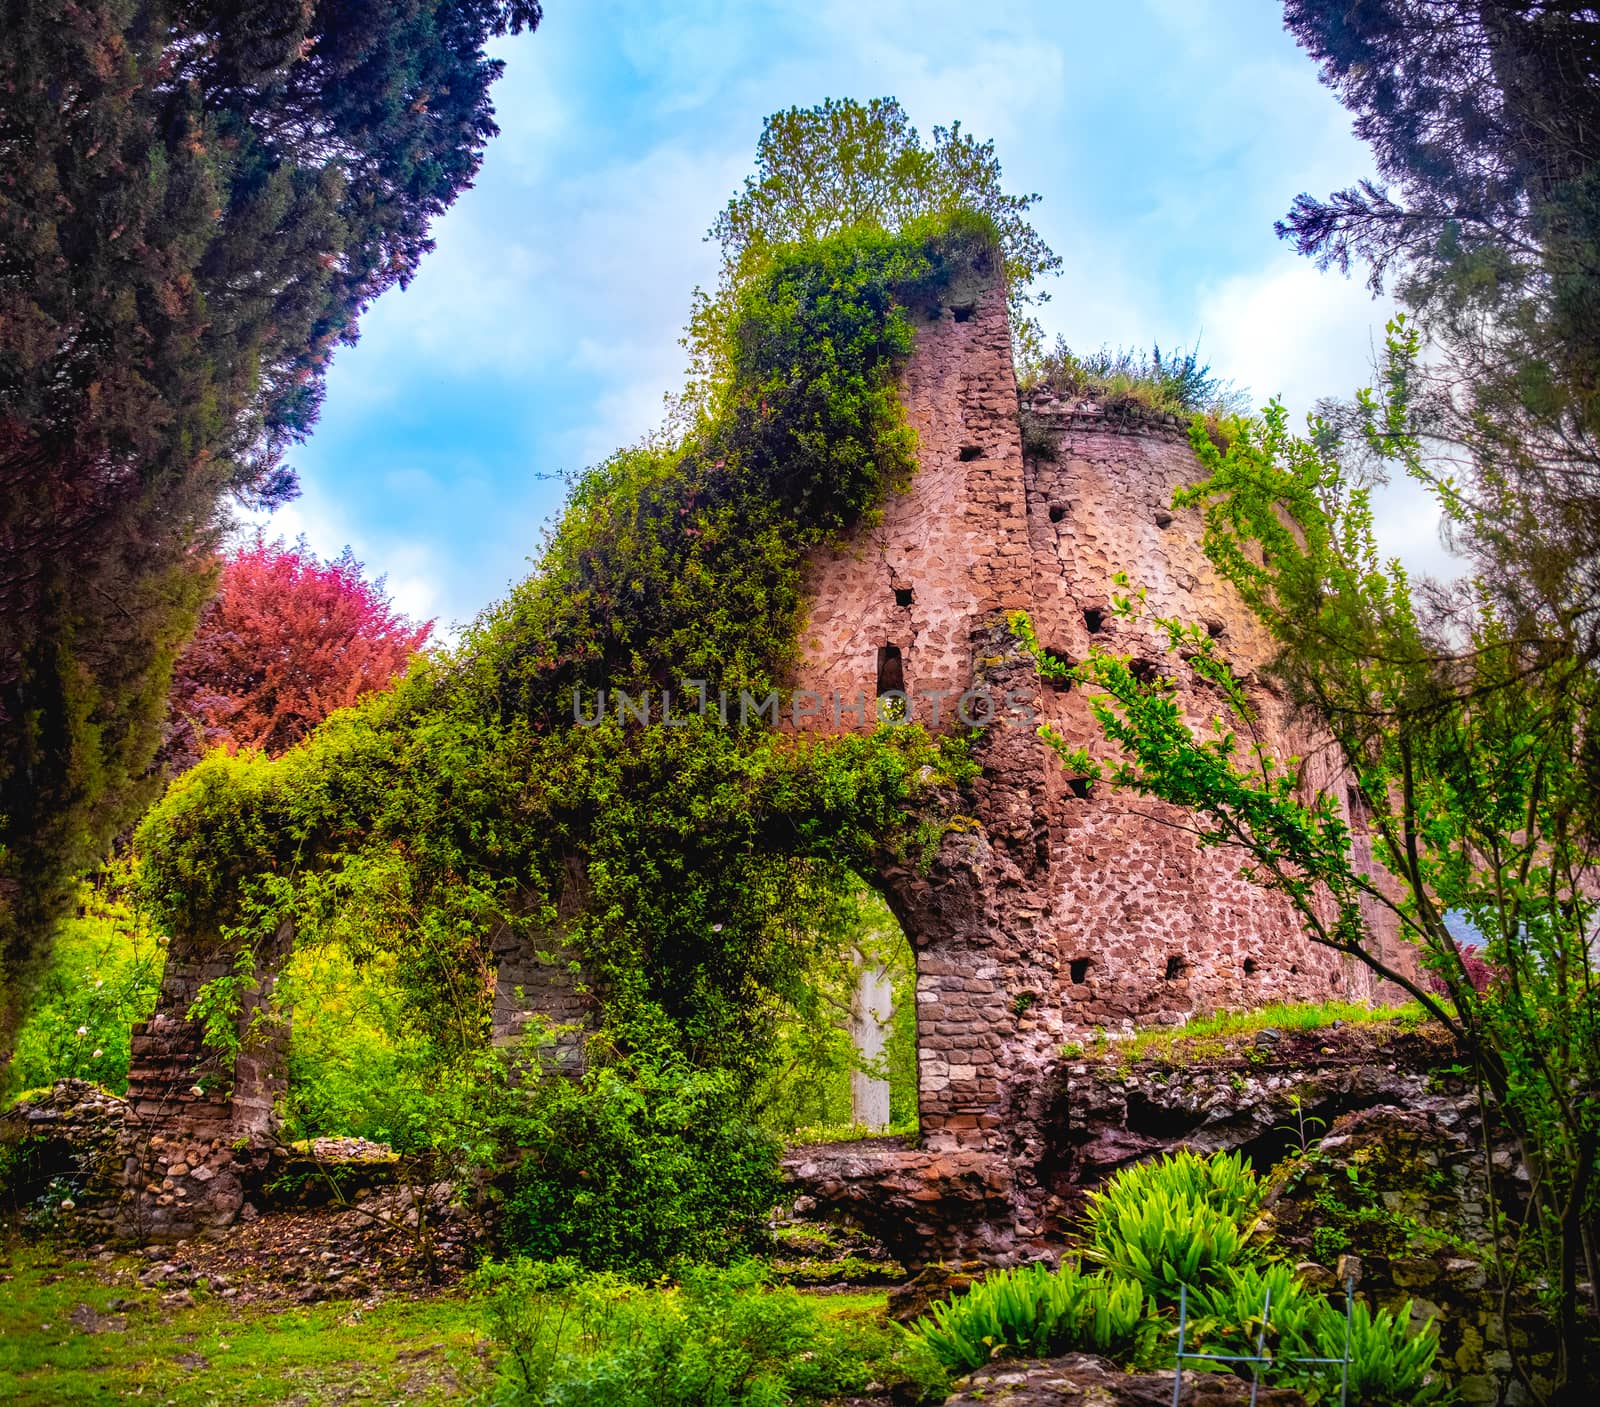 colourful ruins in Giardino della Ninfa gardens in Latina - Lazio - Italy by LucaLorenzelli